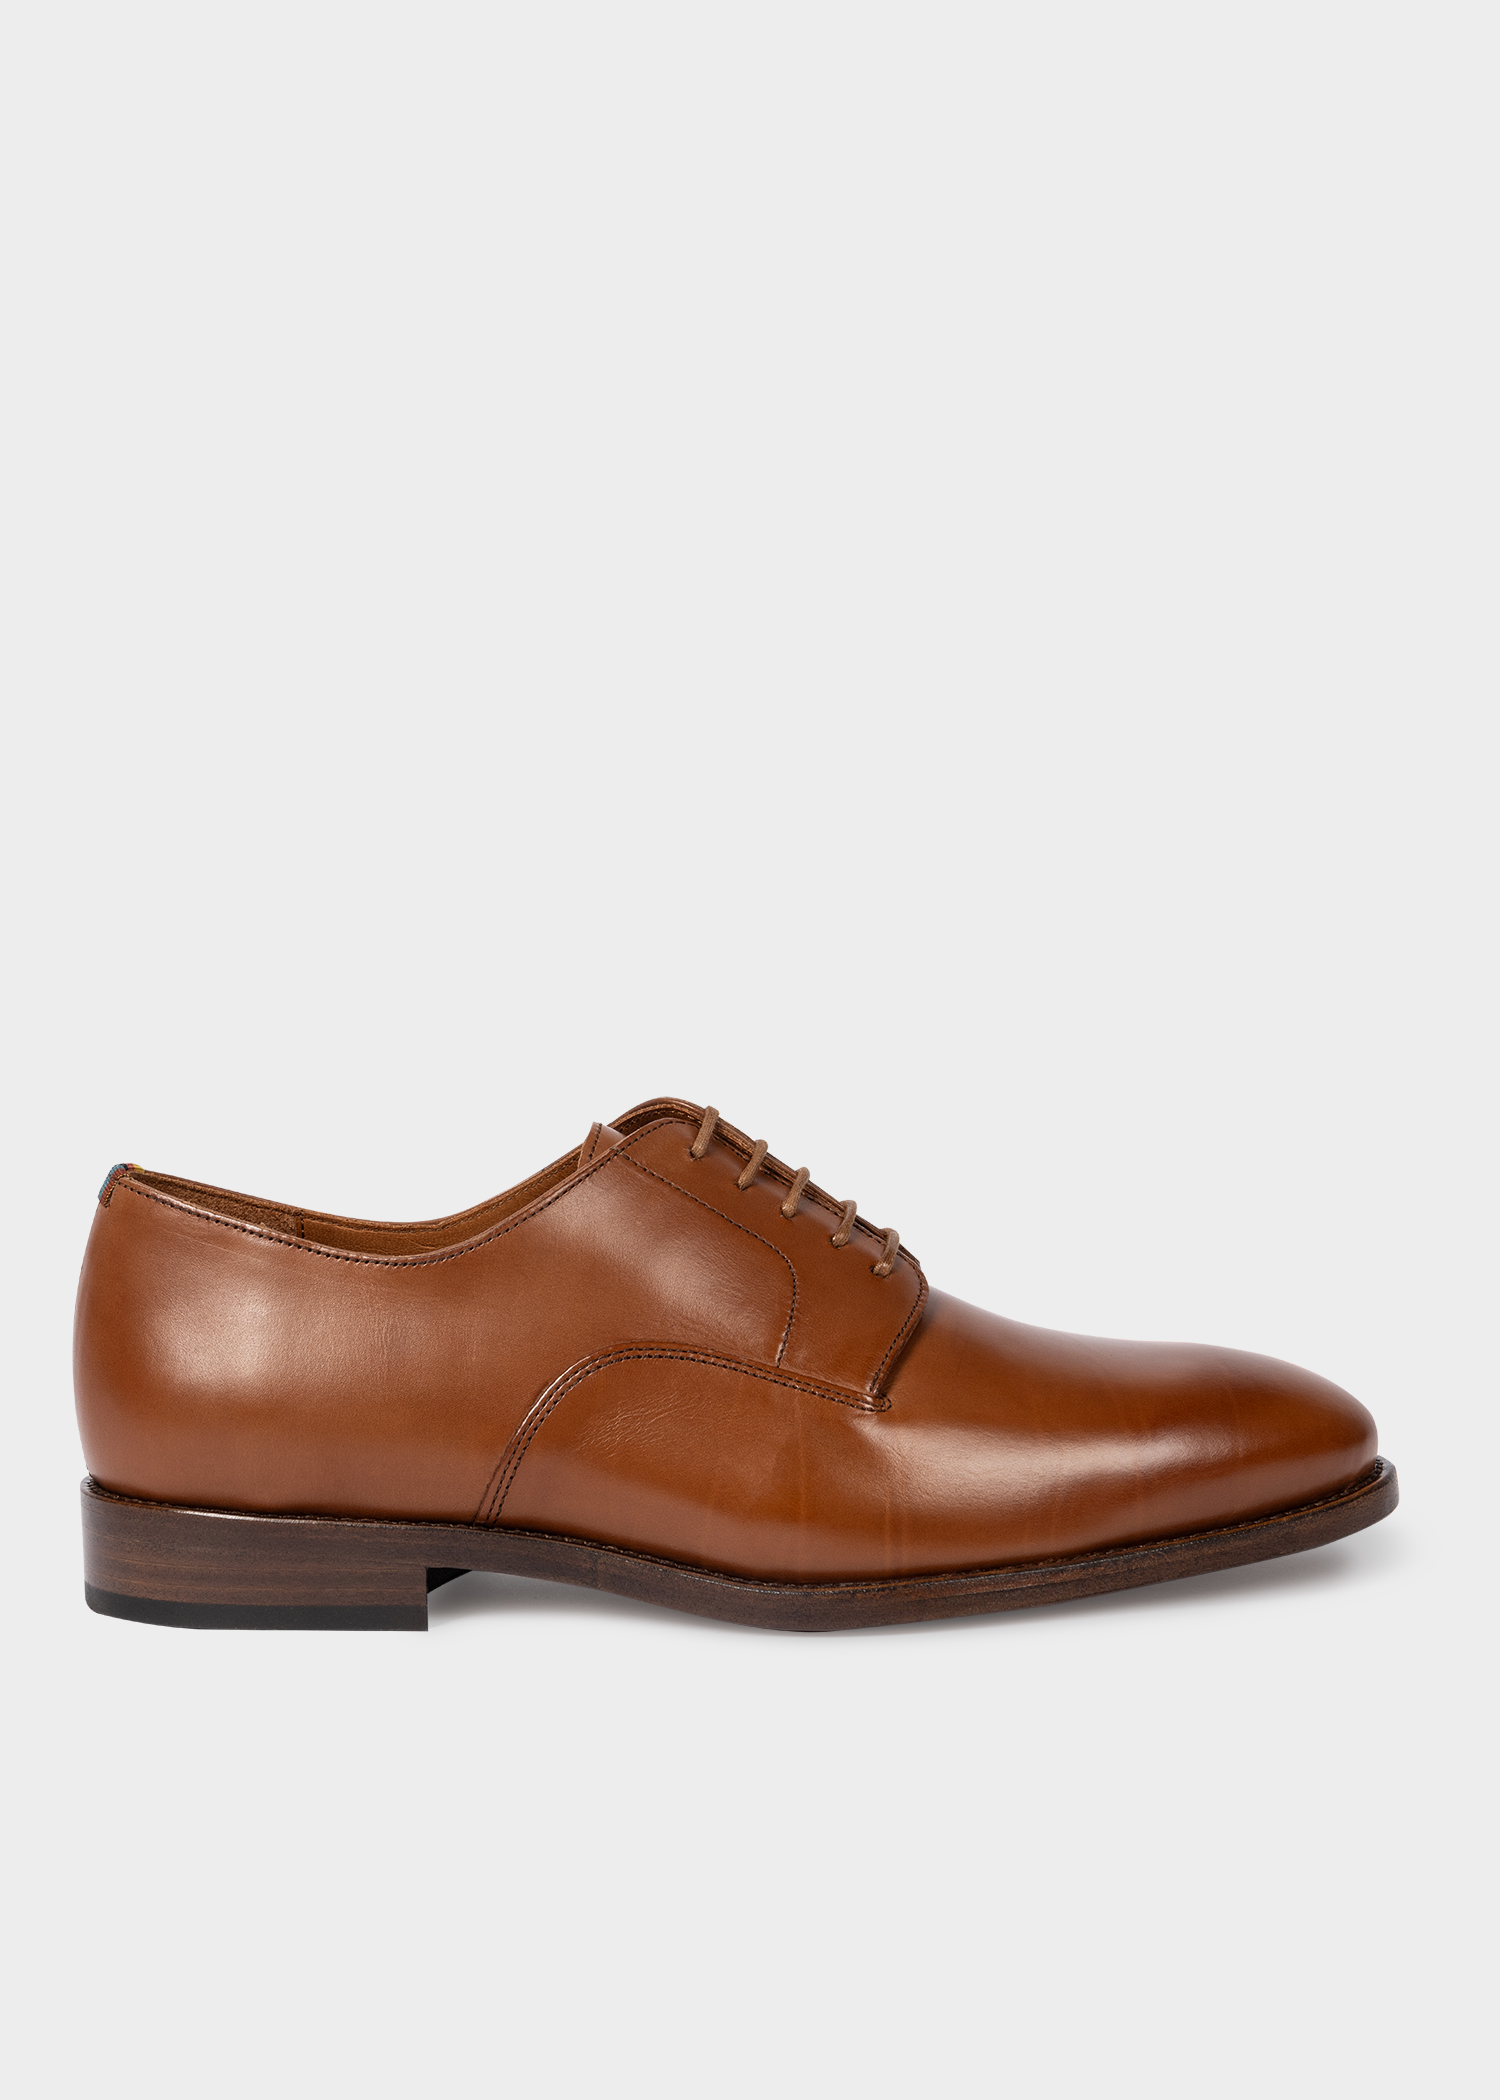 Men's Tan Leather 'Fes' Shoes